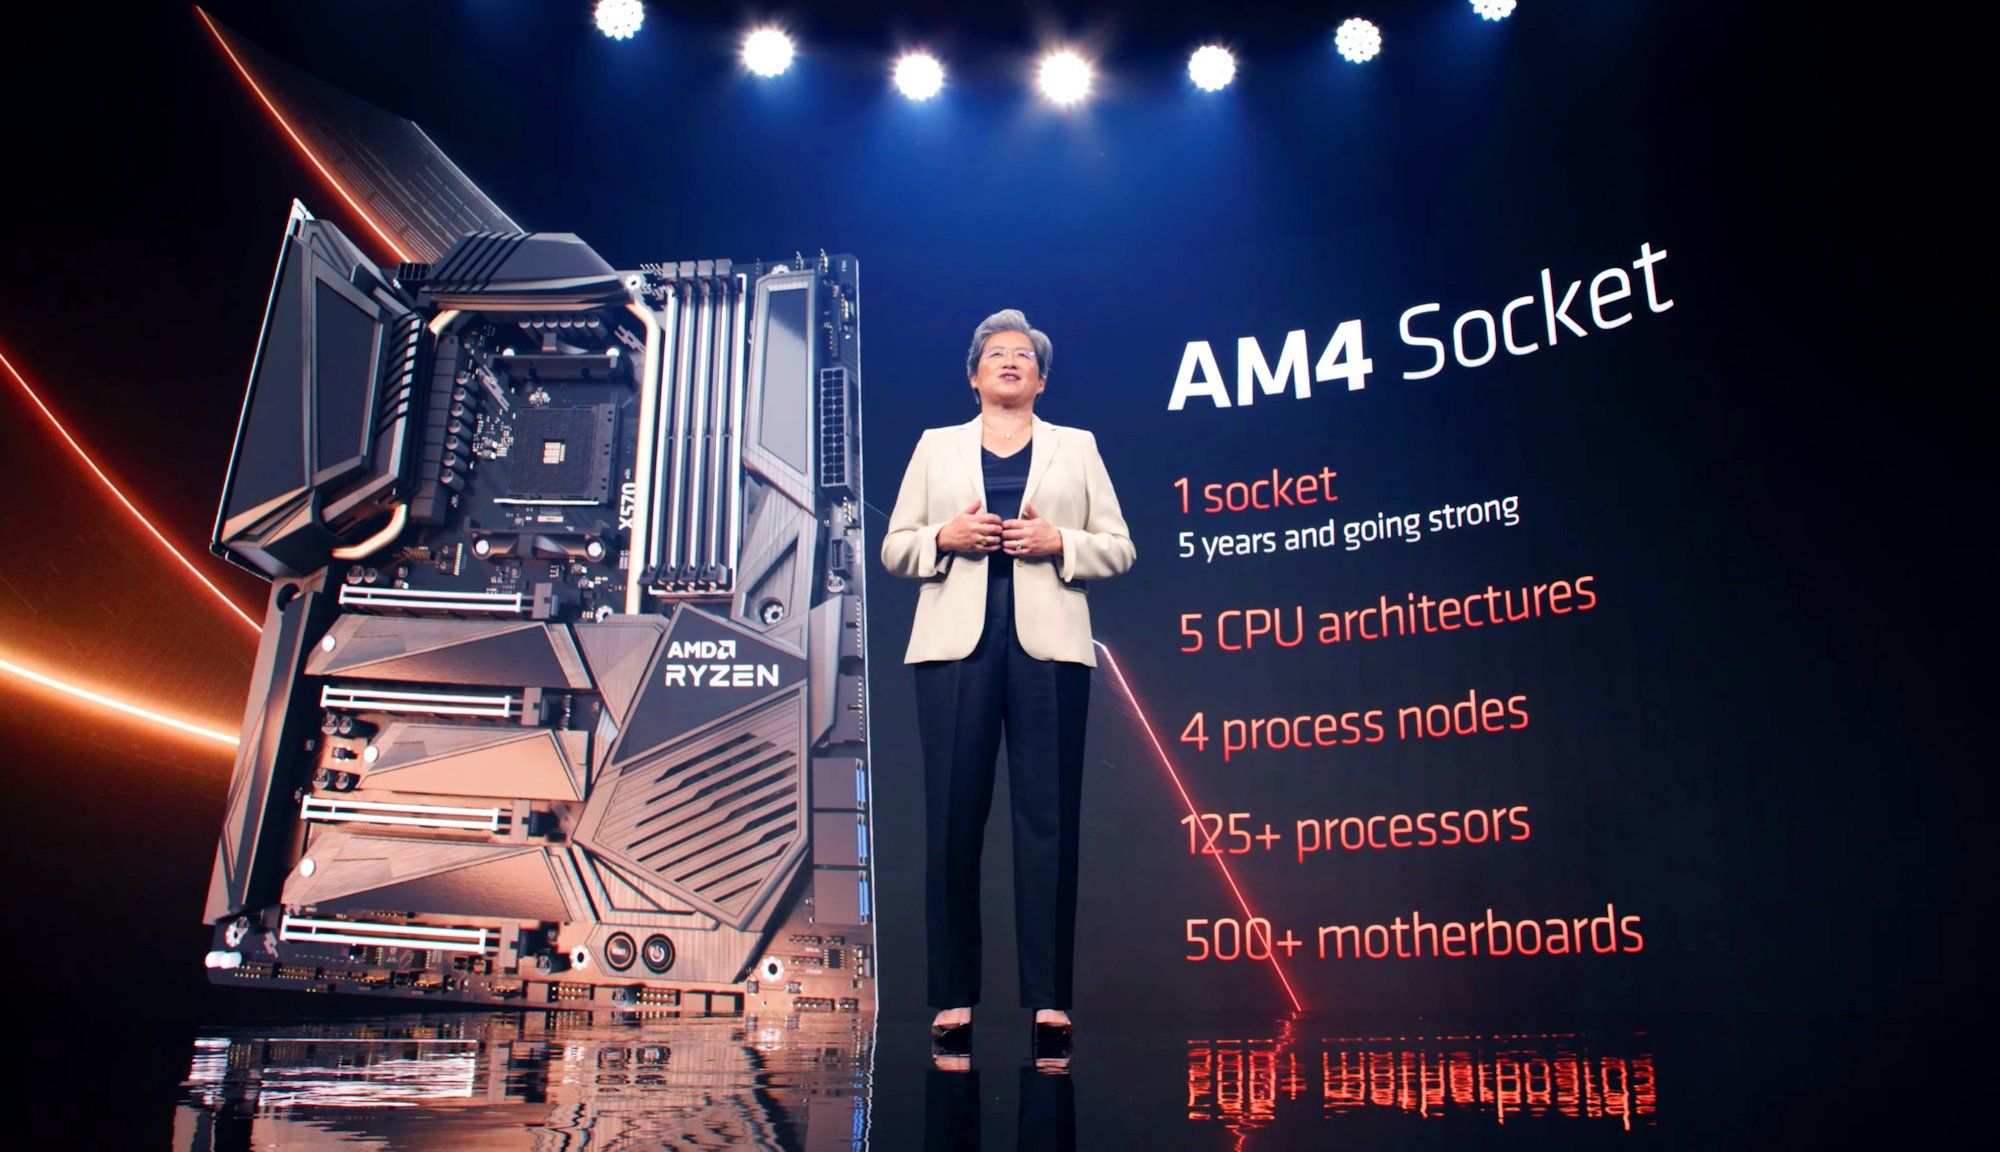 Đã gần 7 năm trôi qua, vậy mà bo mạch chủ AMD AM4 đầu tiên vẫn được cập nhật firmware